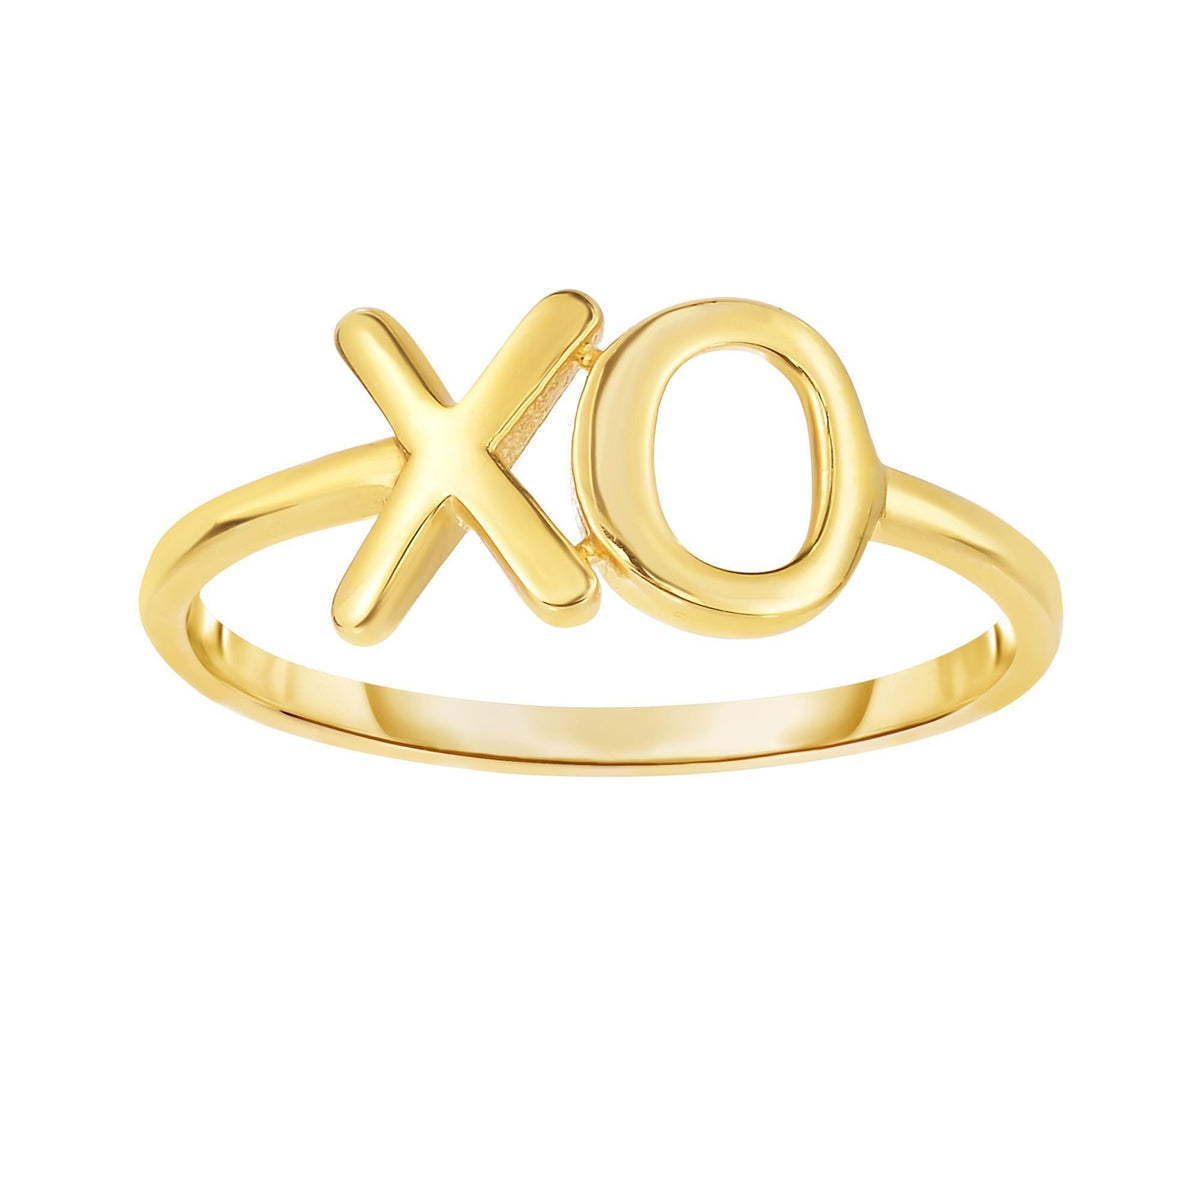 14K Yellow Gold High Polish "XO" Minimalist Ring